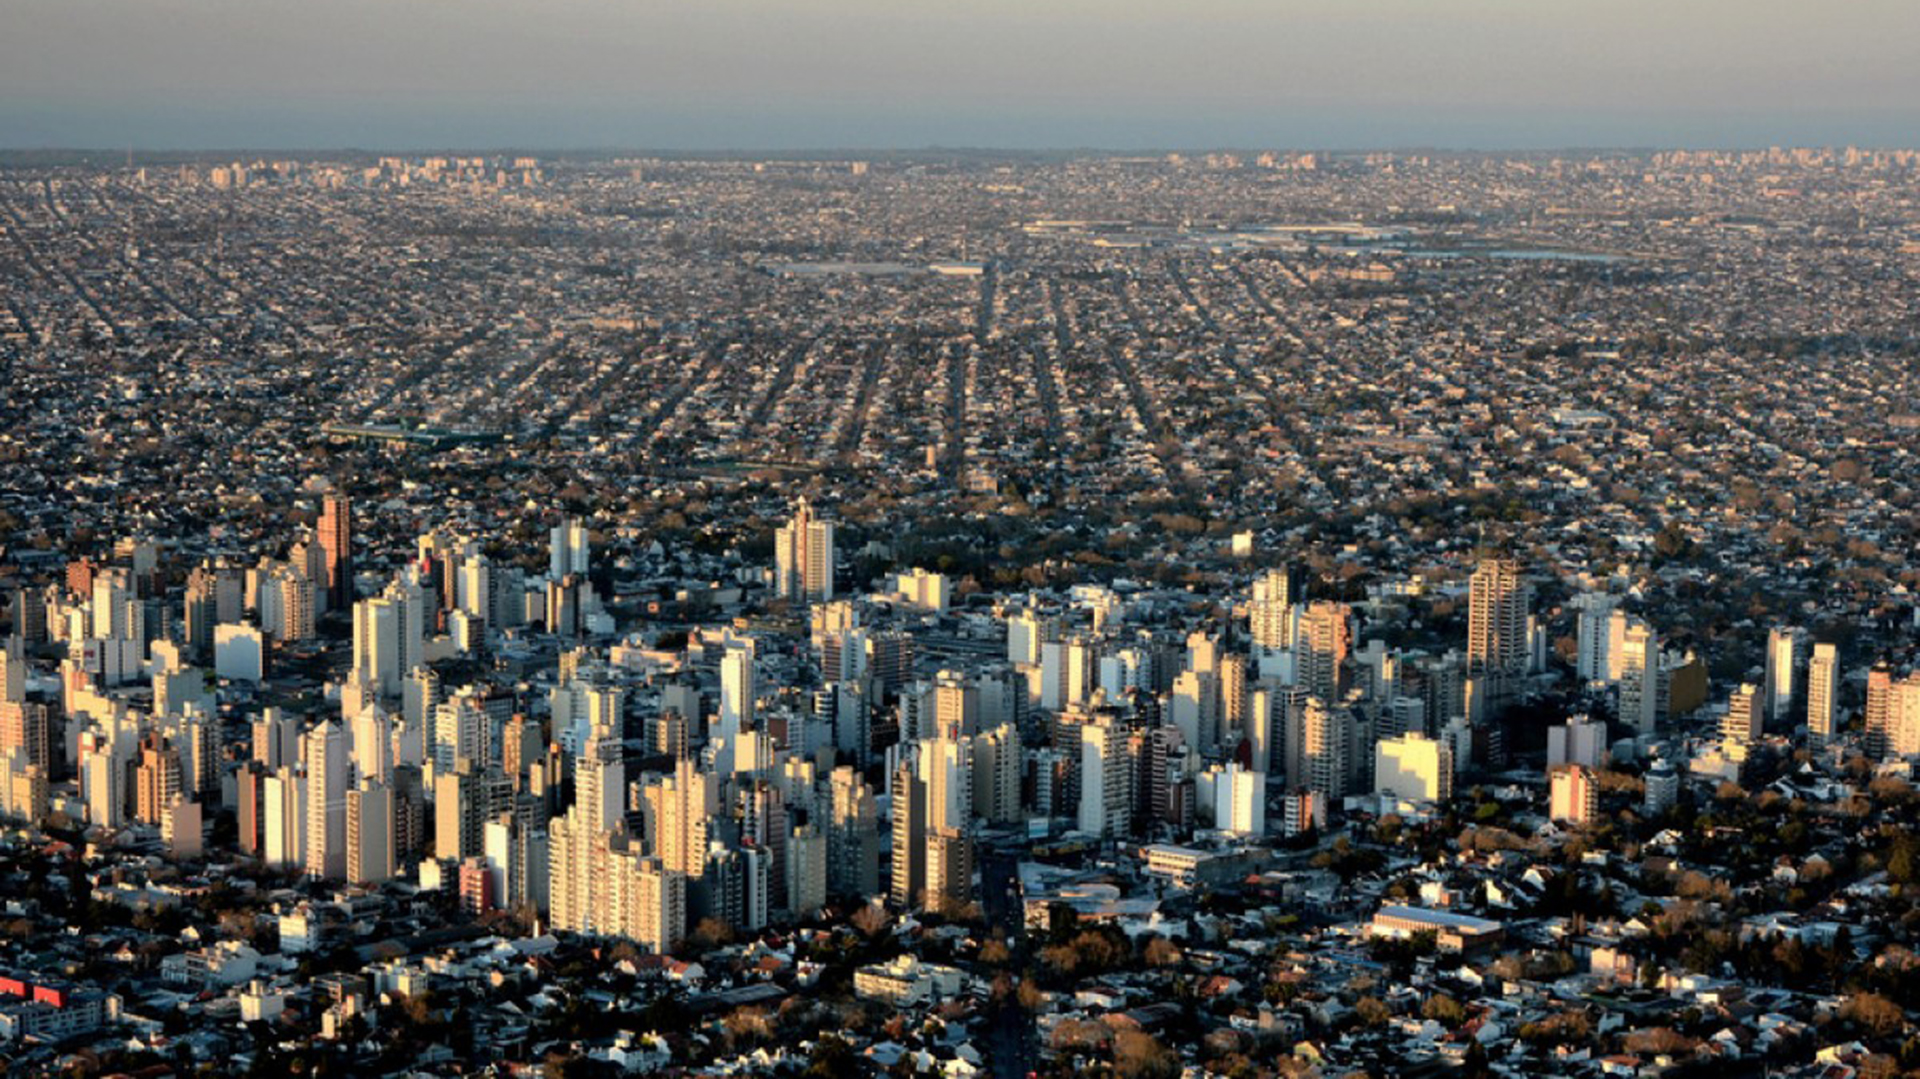 Vista aérea de La Matanza, una de las capitales alternas elegidas por el gobierno nacional (Foto: Carlos Mendoza / Flickr)